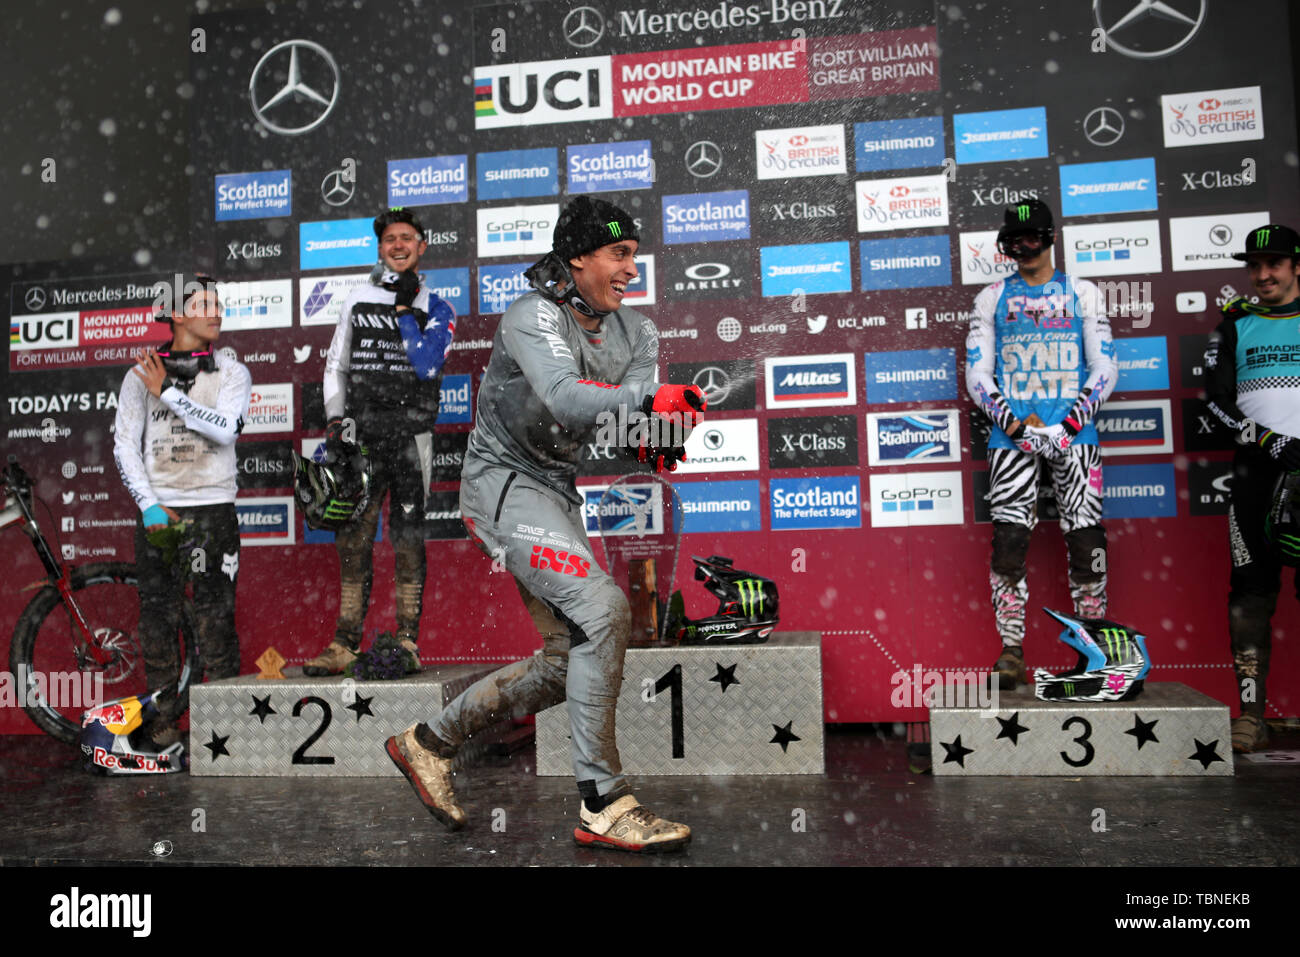 In Francia la Amaury Pierron sul podio festeggia vincendo gli uomini's Downhill durante l'UCI Mountain Bike World Cup a Fort William. Foto Stock